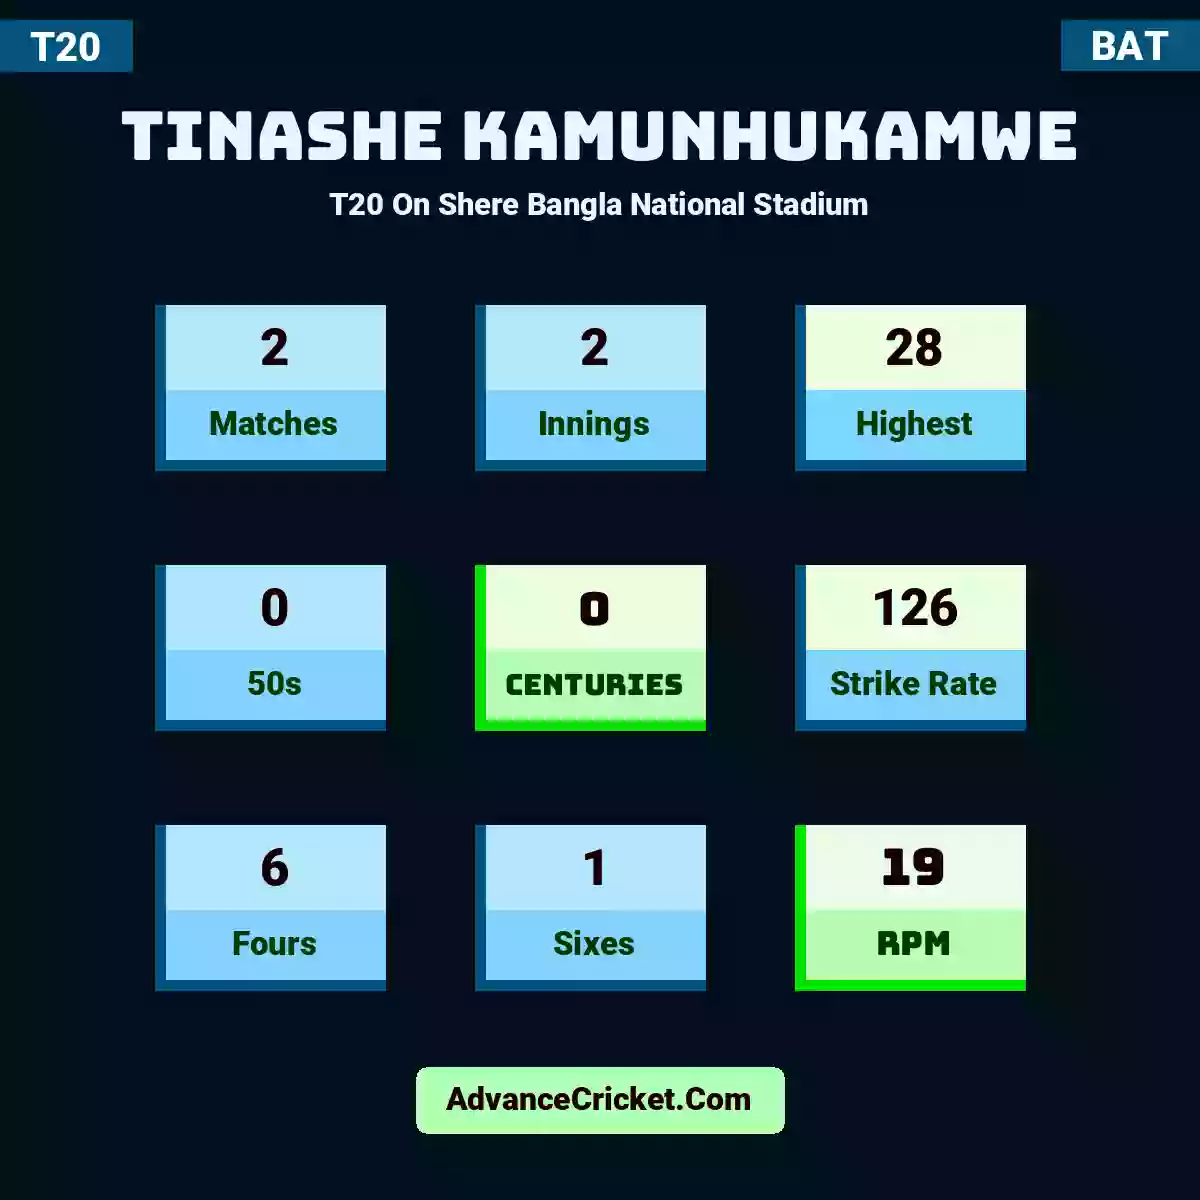 Tinashe Kamunhukamwe T20  On Shere Bangla National Stadium, Tinashe Kamunhukamwe played 2 matches, scored 28 runs as highest, 0 half-centuries, and 0 centuries, with a strike rate of 126. T.Kamunhukamwe hit 6 fours and 1 sixes, with an RPM of 19.